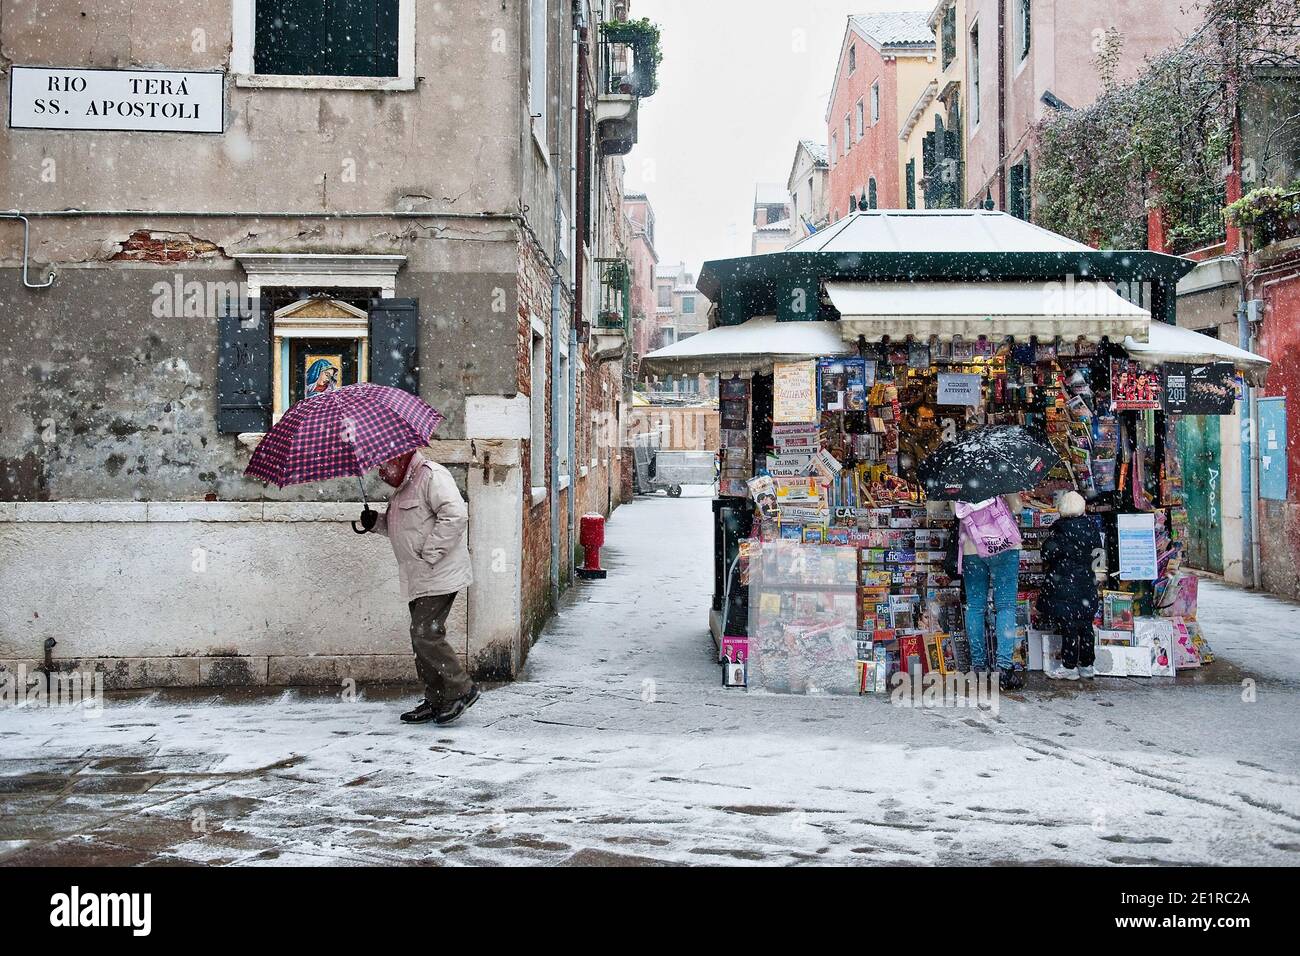 Una calle e un edicola in vendita nella neve, Venezia Italia Foto Stock